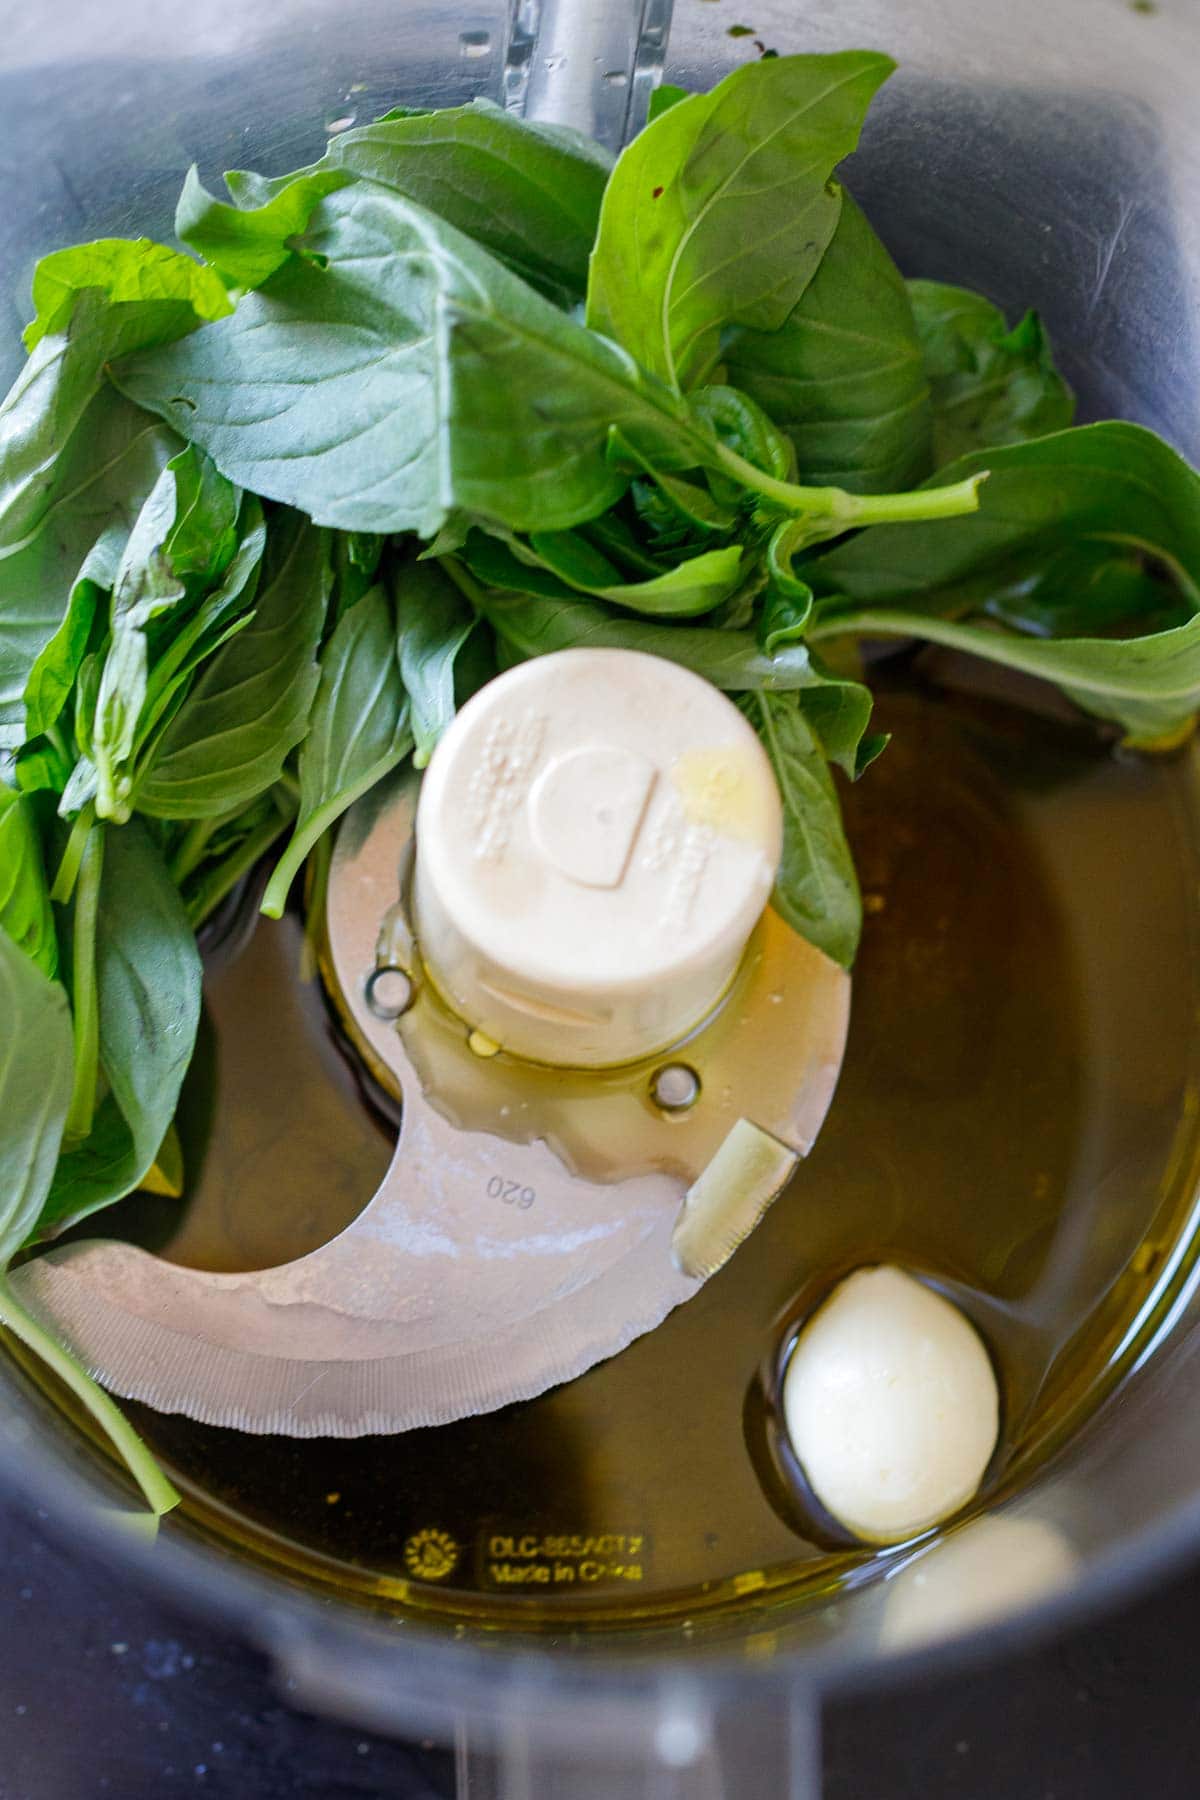 fresh basil, garlic olive oil in a food processor.